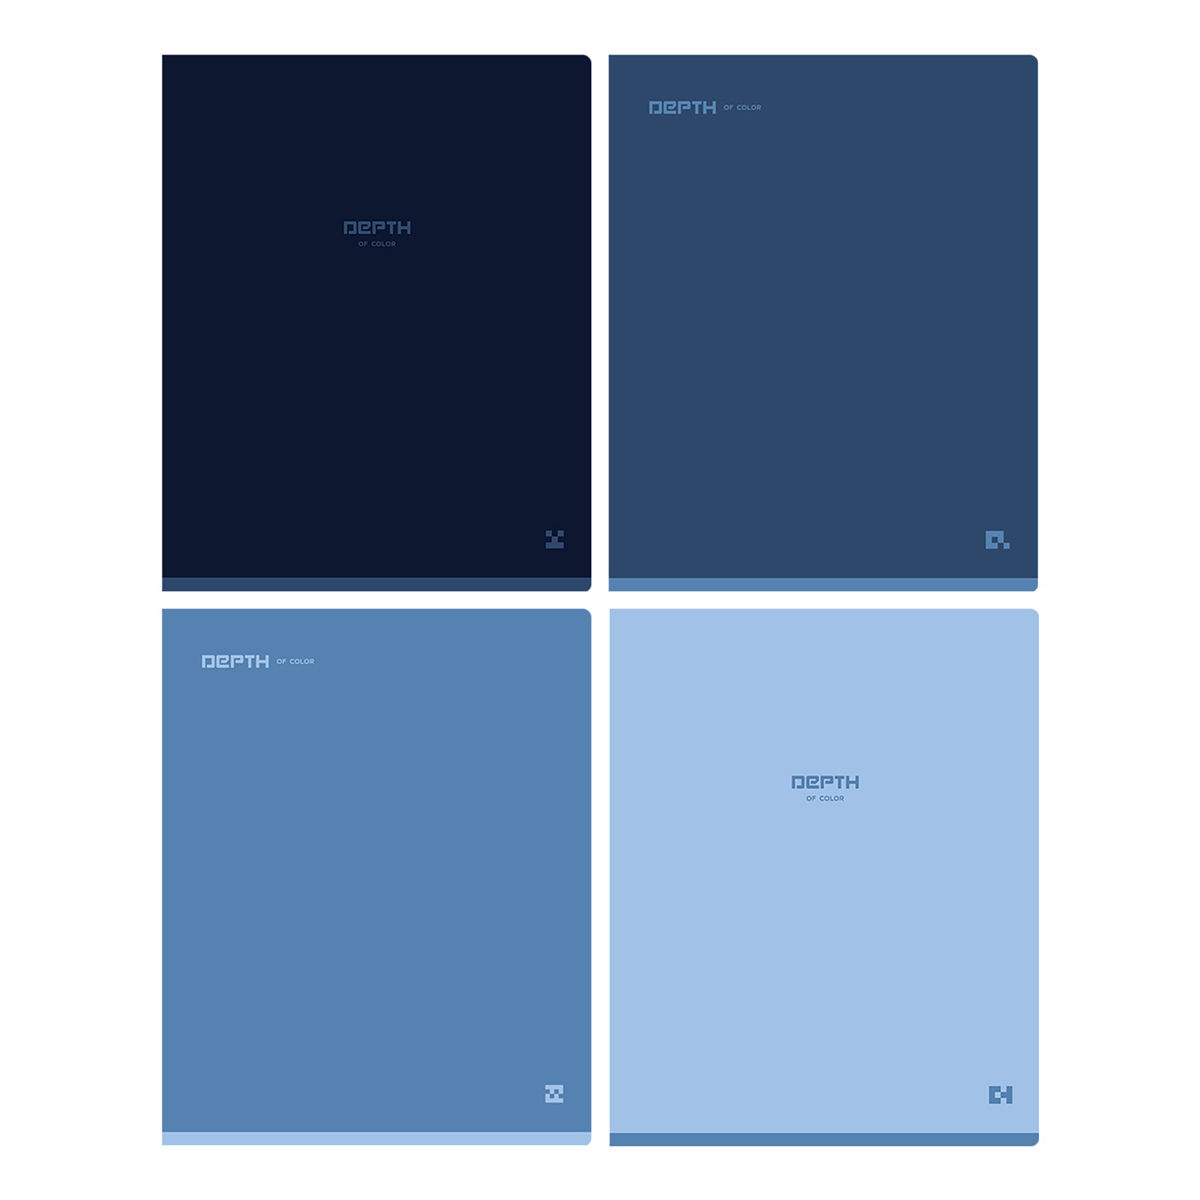  48., 5,  BG "Monocolor. Blue", sof 